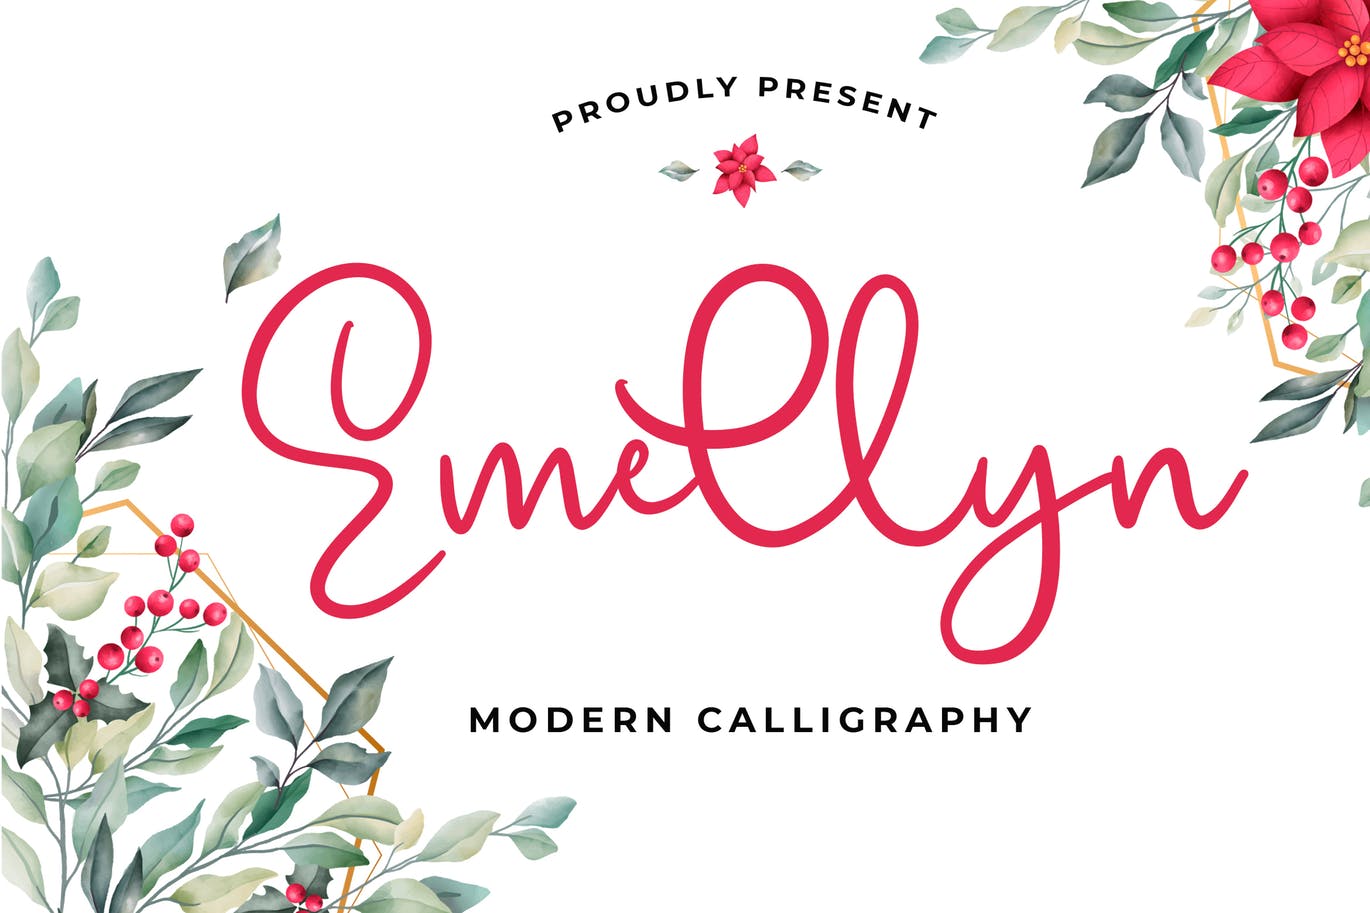 可爱风格英文现代书法字体非凡图库精选 Emellyn Lovely Modern Calligraphy Font插图